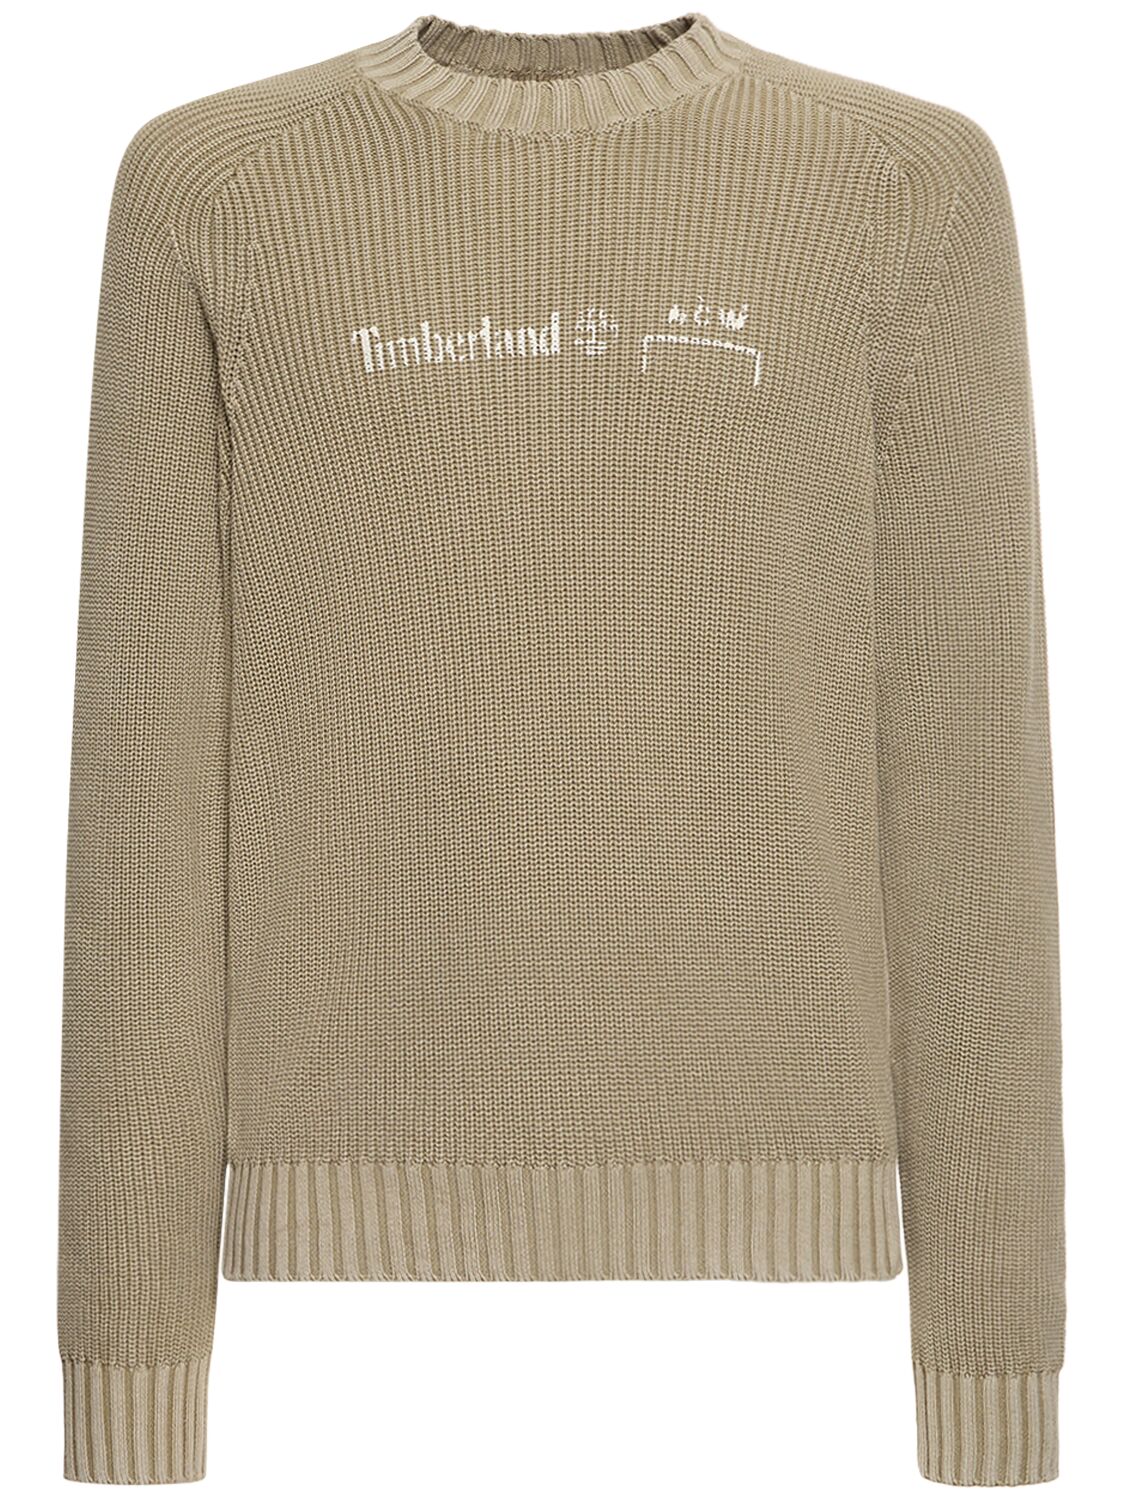 X Timberland Knit Sweater - A-COLD-WALL* - Modalova